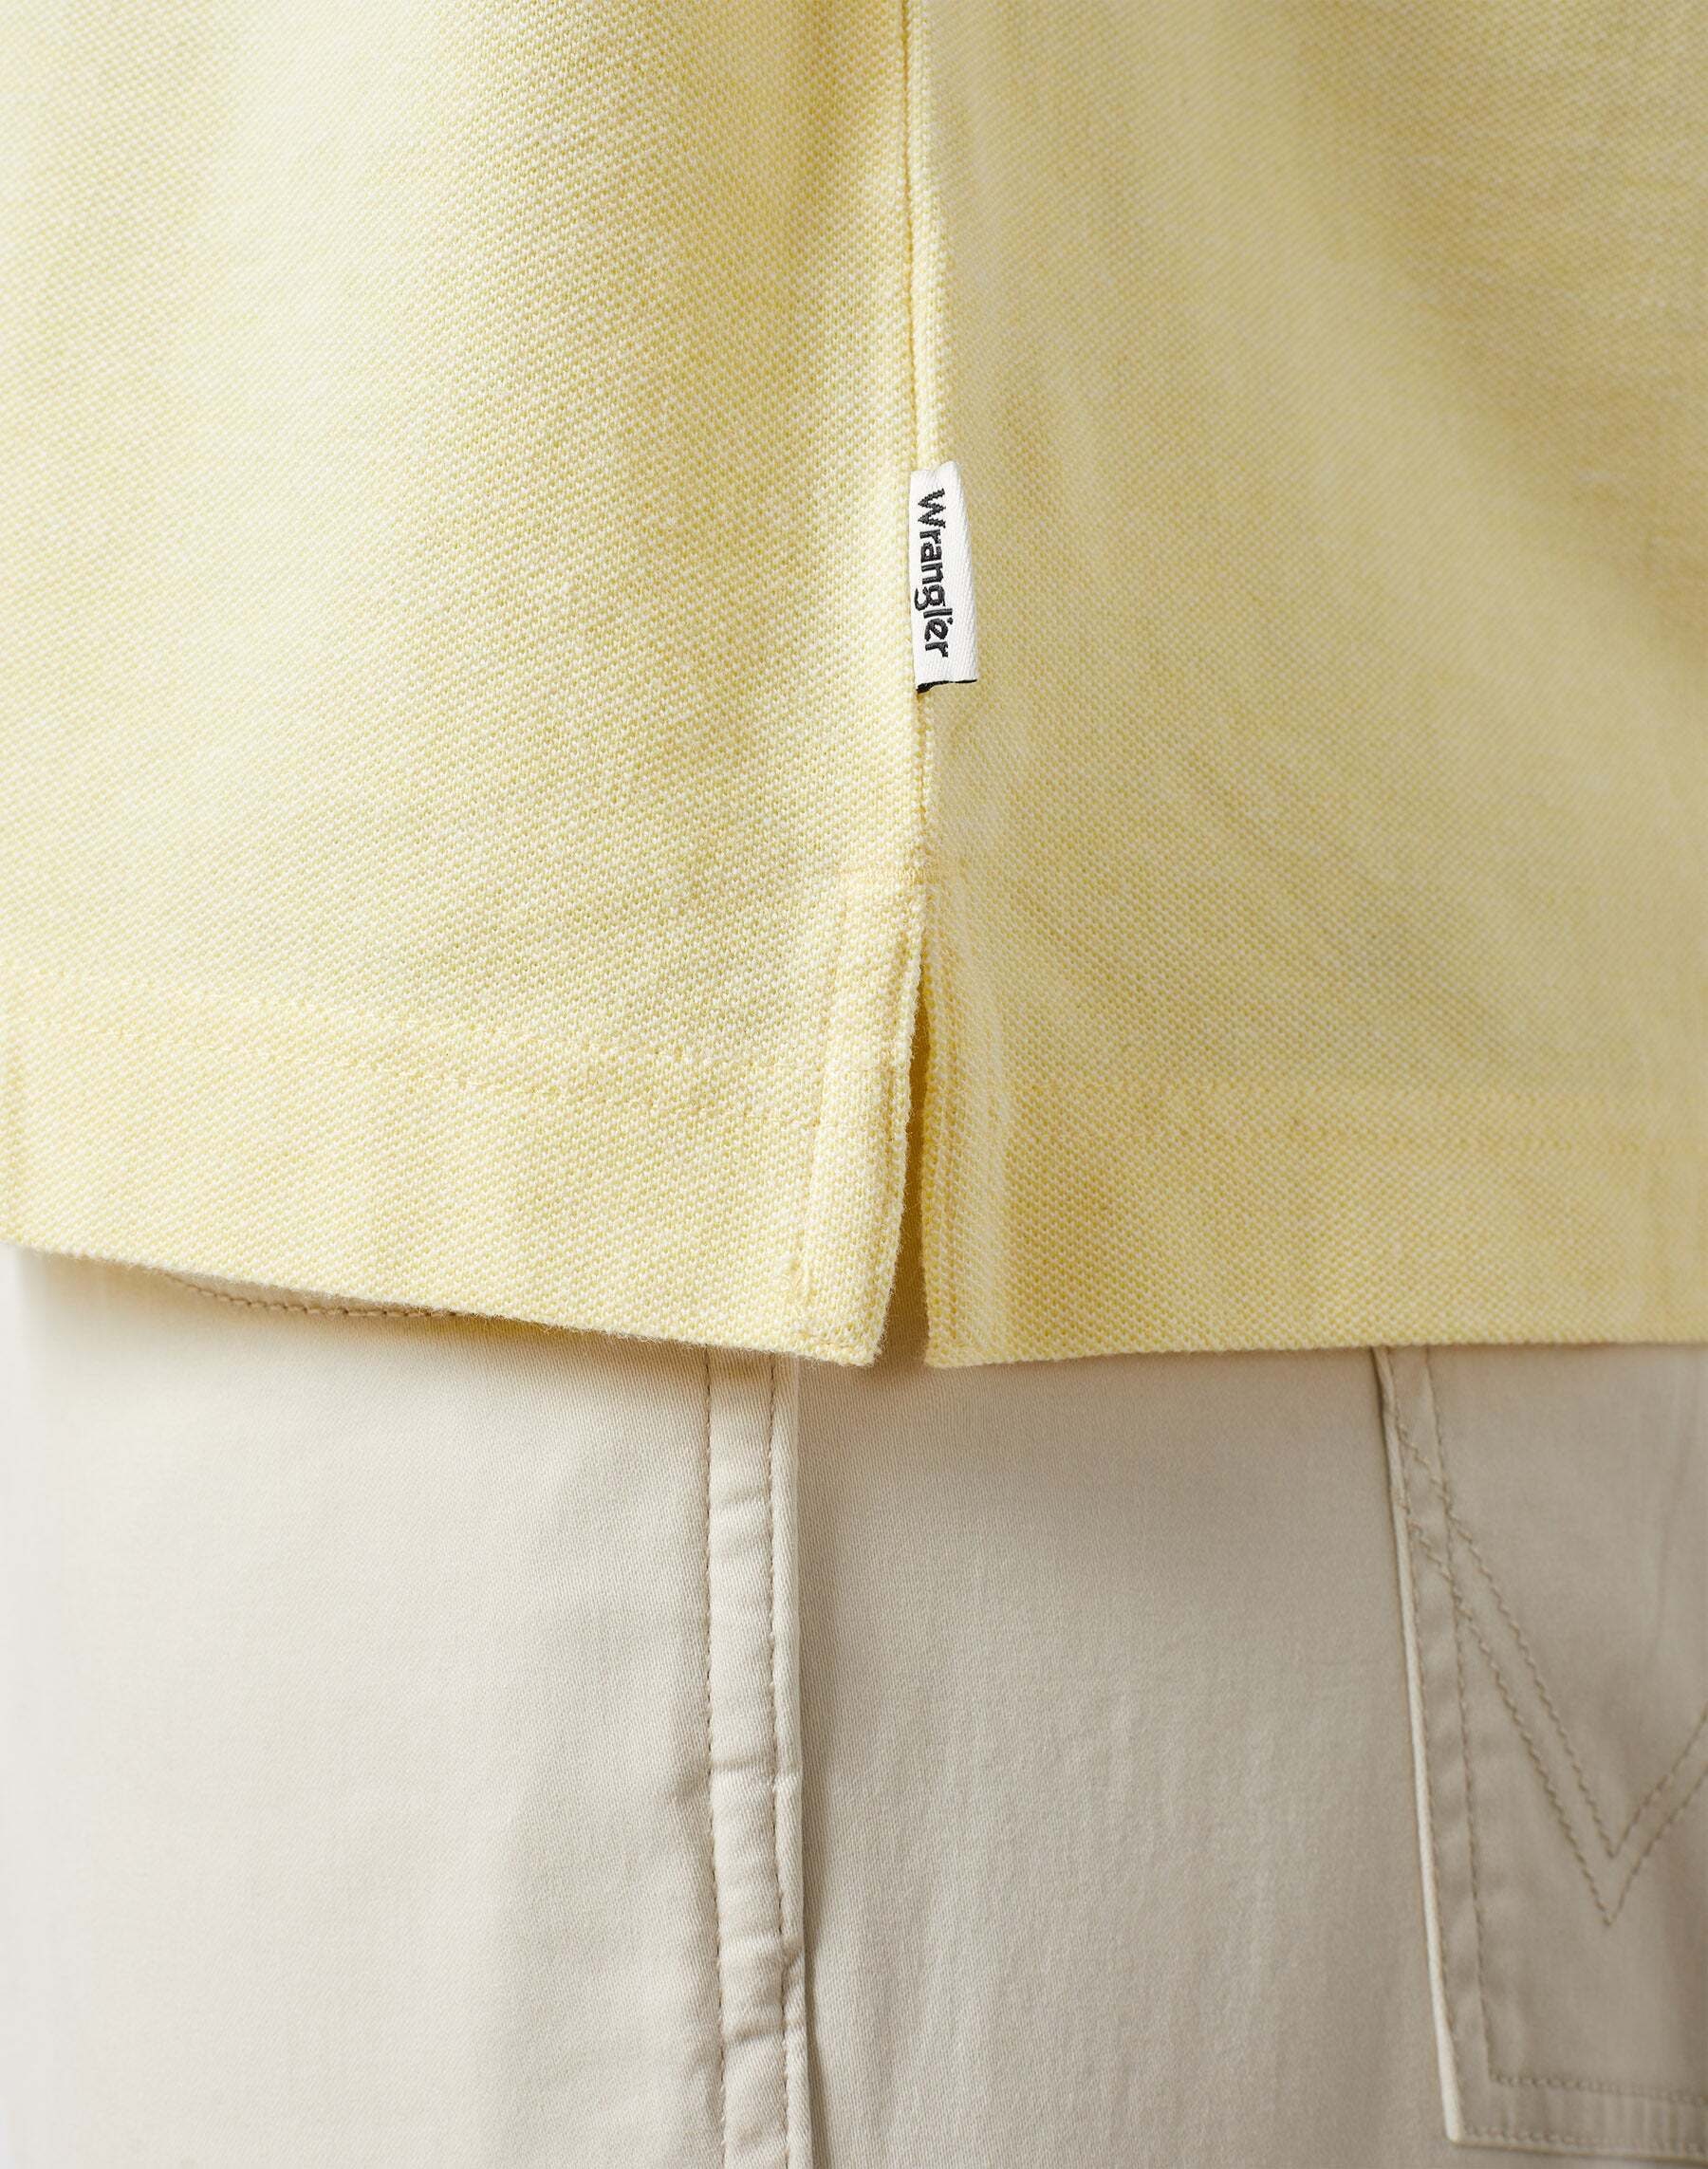 Wrangler Poloshirt »Wrangler Polos Refined Polo Shirt«